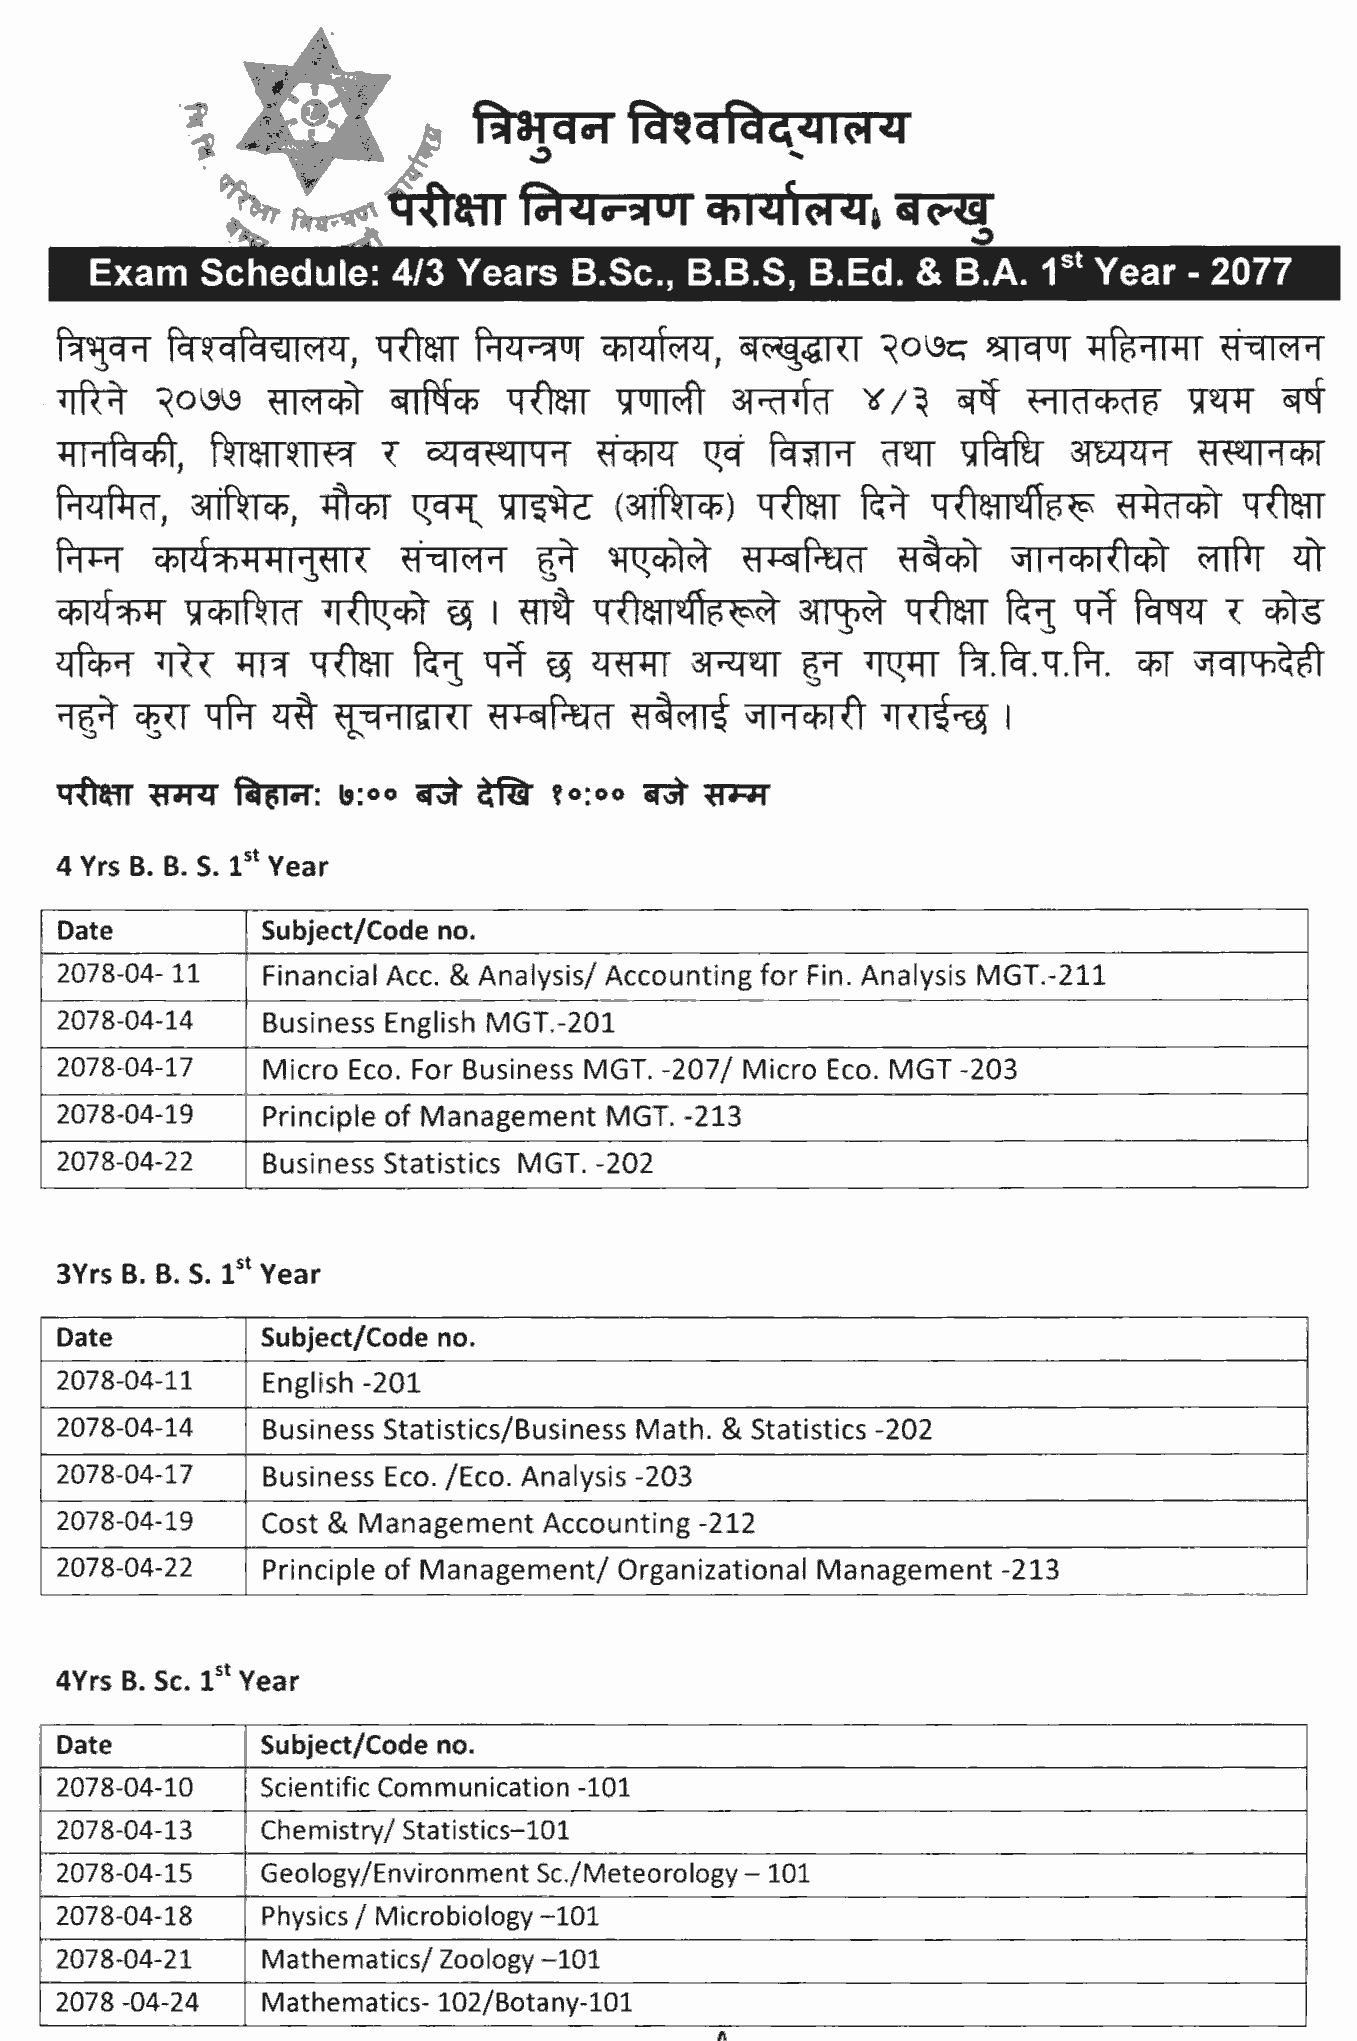 Exam Schedule 4-3 Years B.Sc., B.B.S, B.Ed. 2nd Year 2077 Tribhuvan University